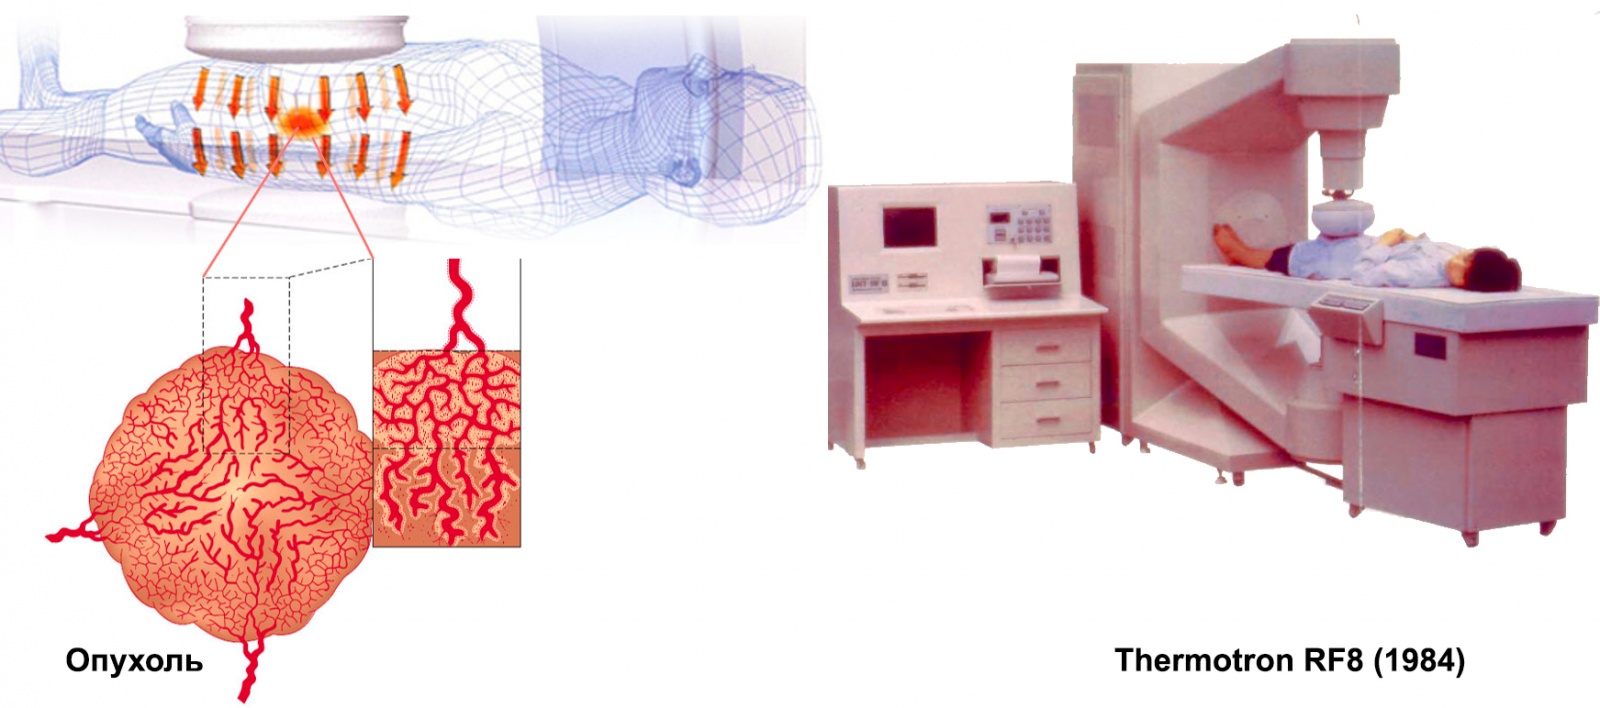 Иллюстрация того, как выглядит сосудистая сетка новообразования в тазовой области и аппарат гипертермии на частоте 8 МГц для выжигания подобных опухолей.